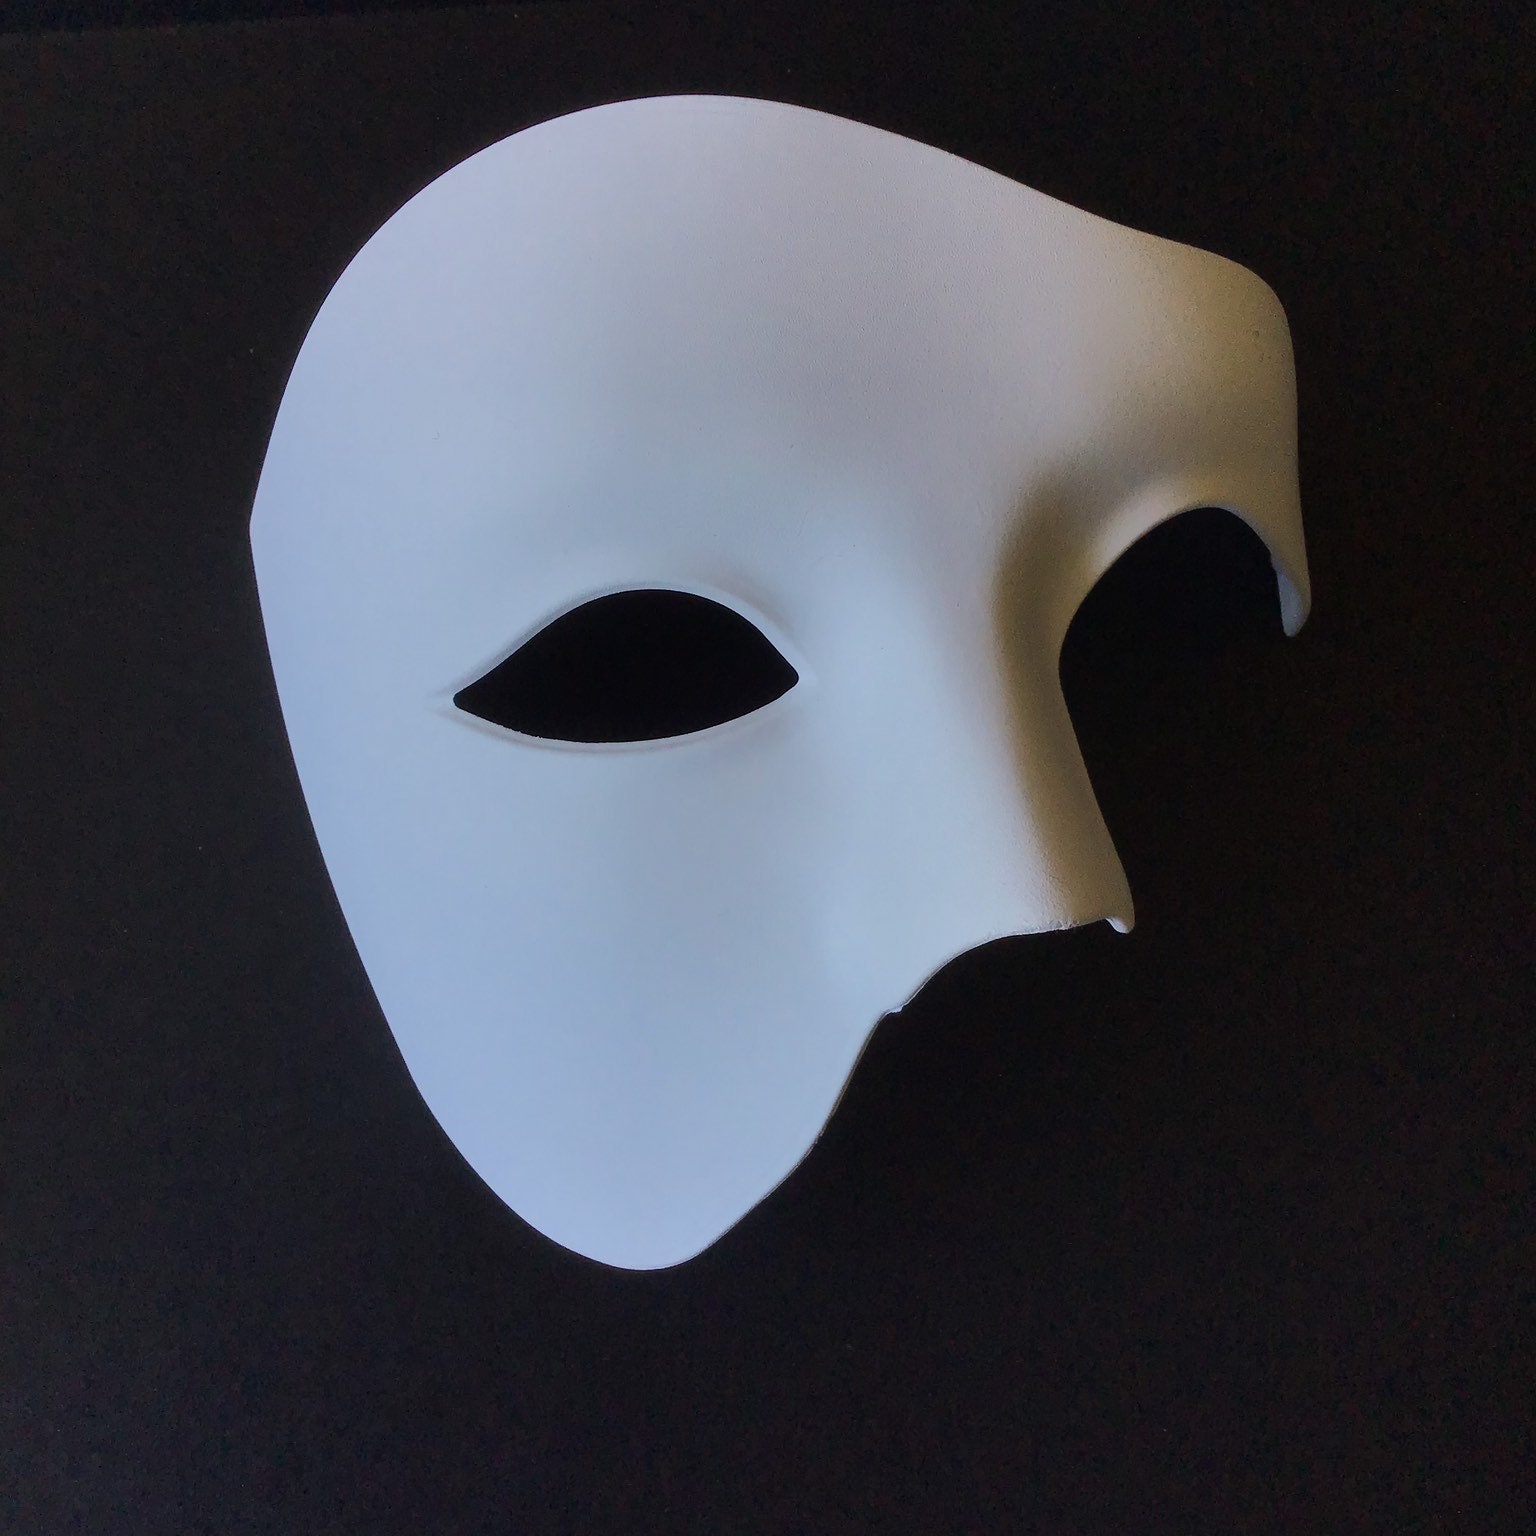 White Half Mask